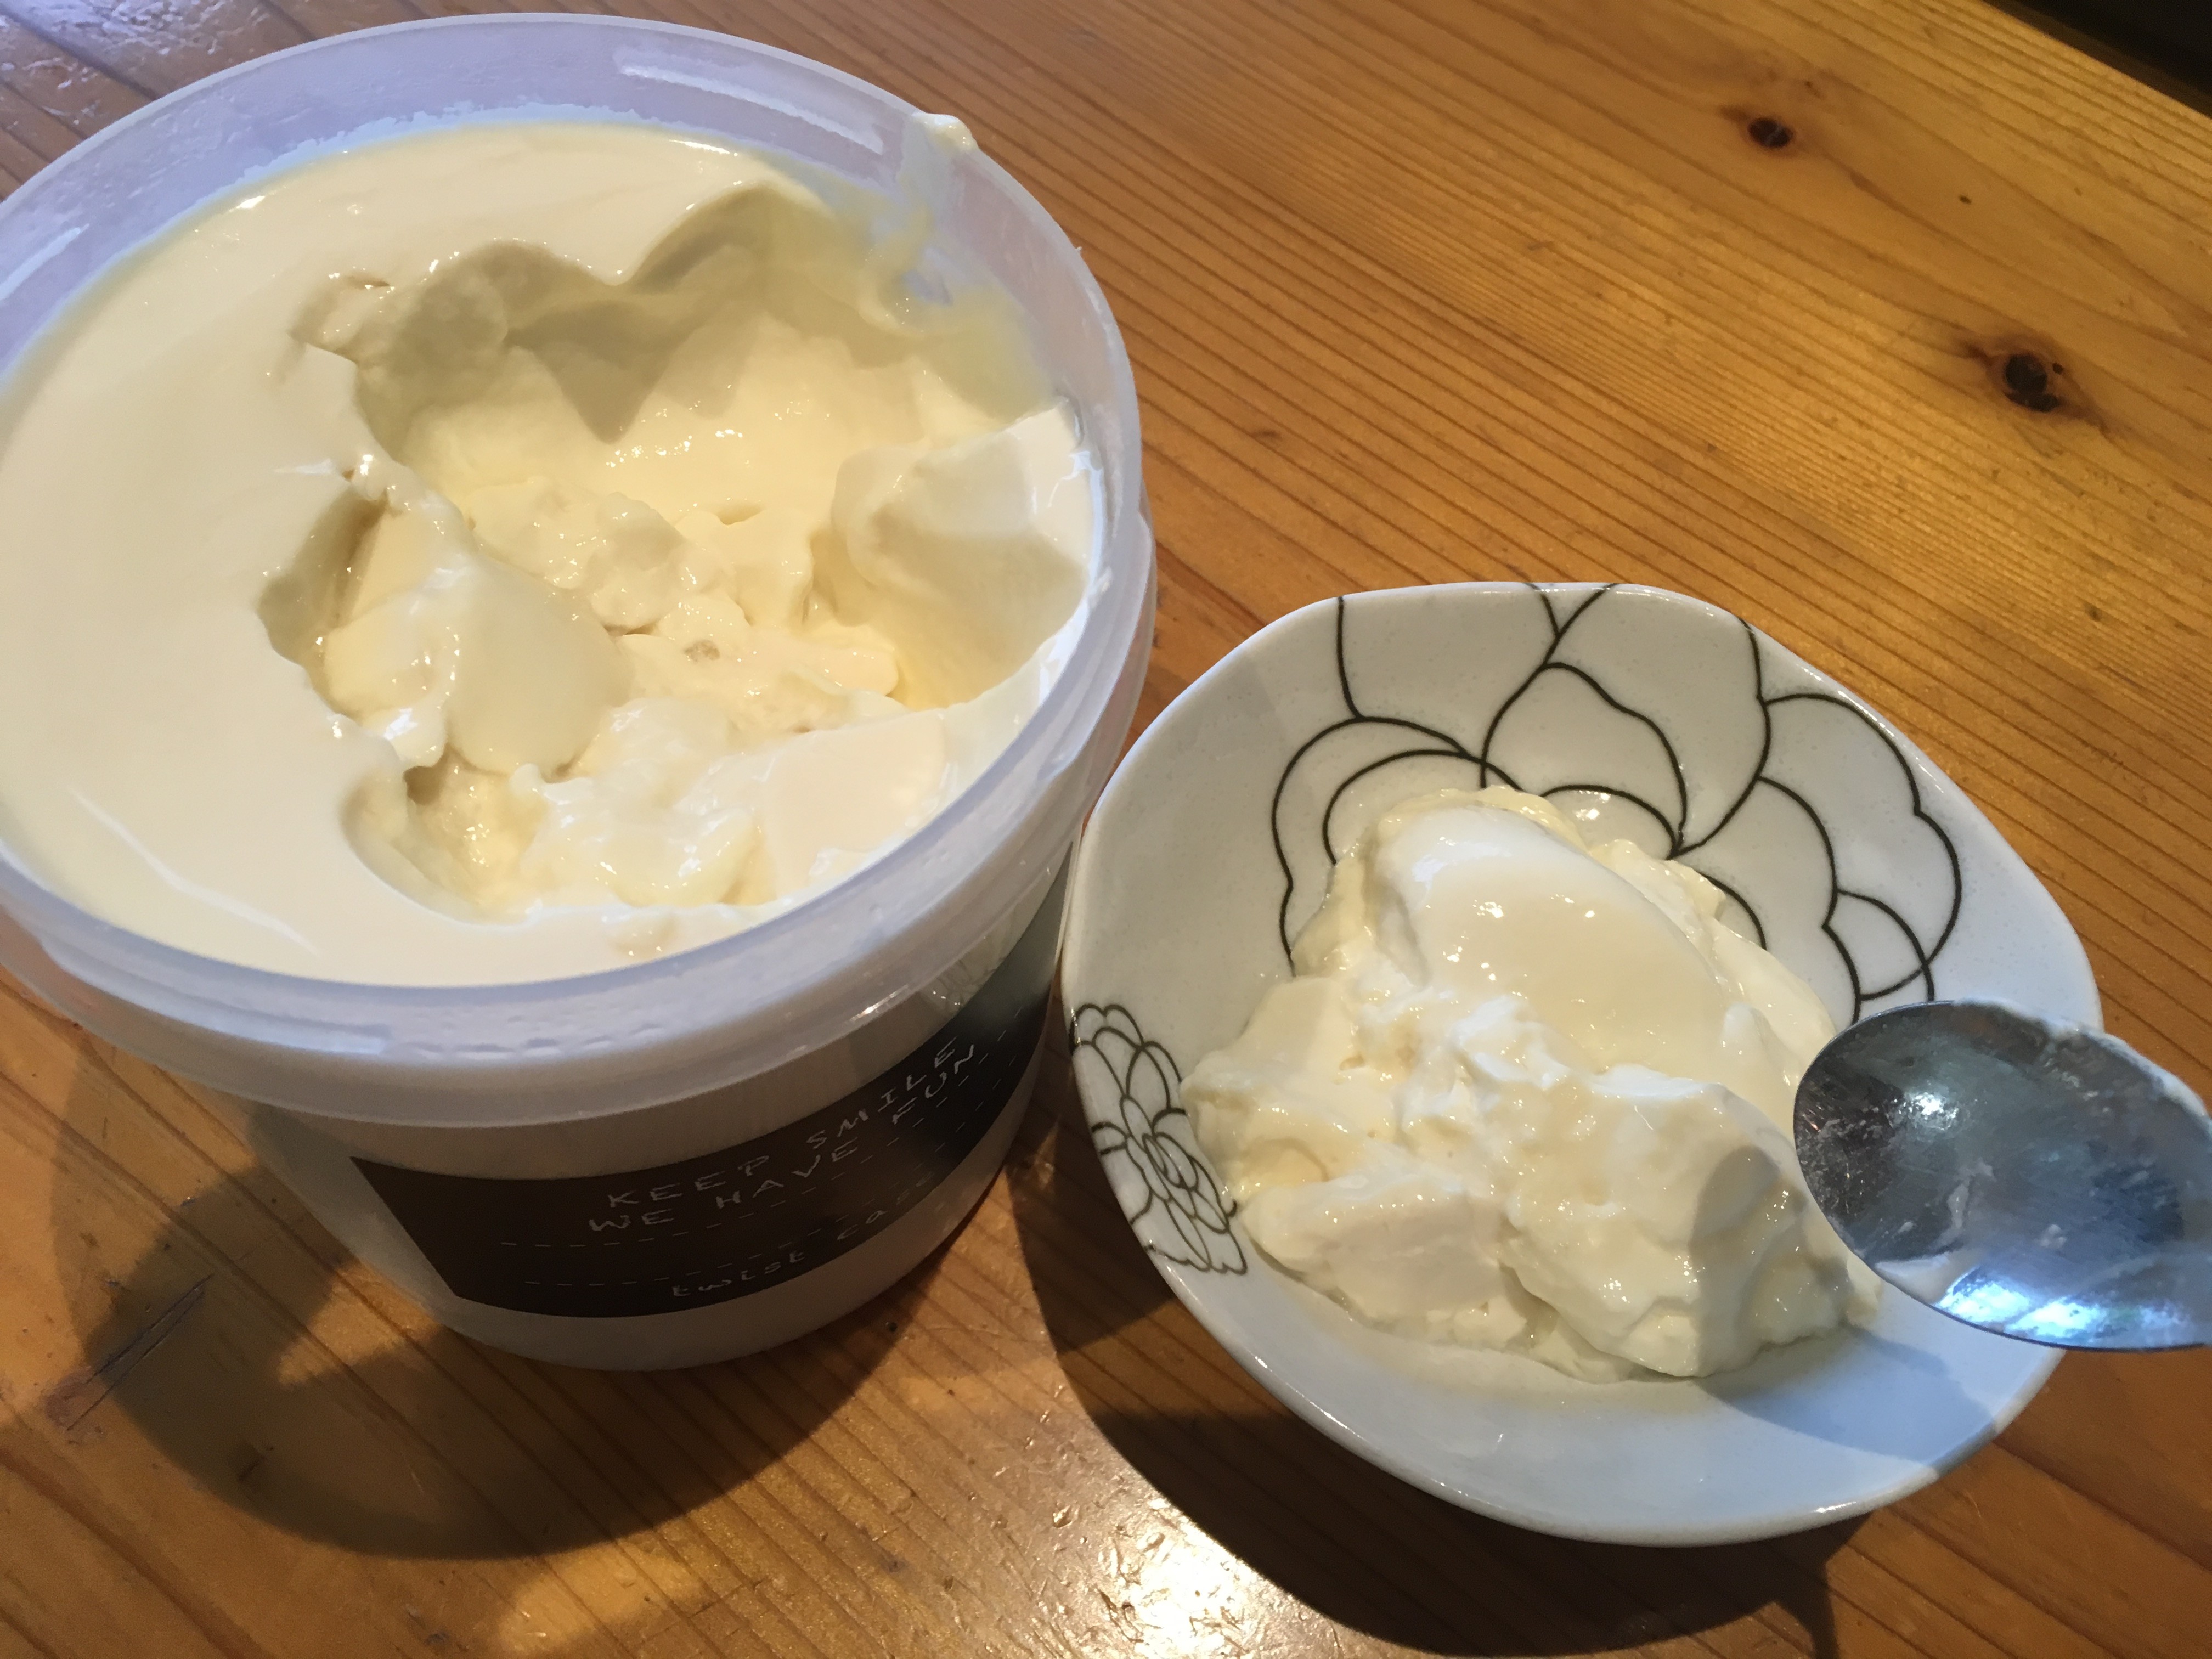 カスピ海ヨーグルトを豆乳で作ると口の中でシュワっとします わたしの日常に価値はありますか